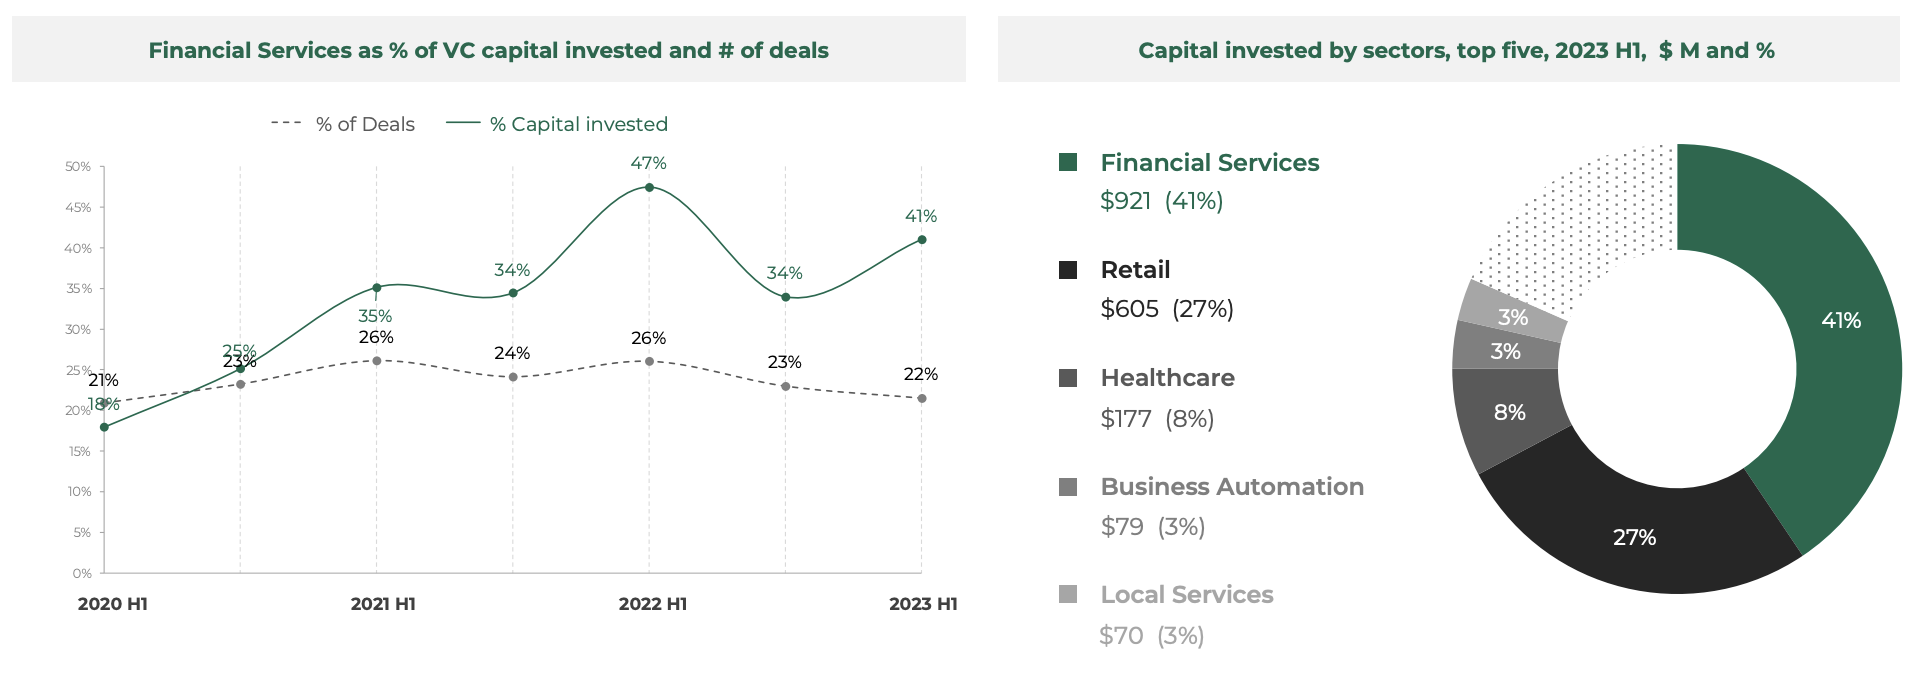 Rahoituspalvelujen osuus % sijoitetusta riskipääomasta ja kaupoista, Lähde: Southeast Asia Tech Investment 2023 H1, Cento Ventures, joulukuu 2023